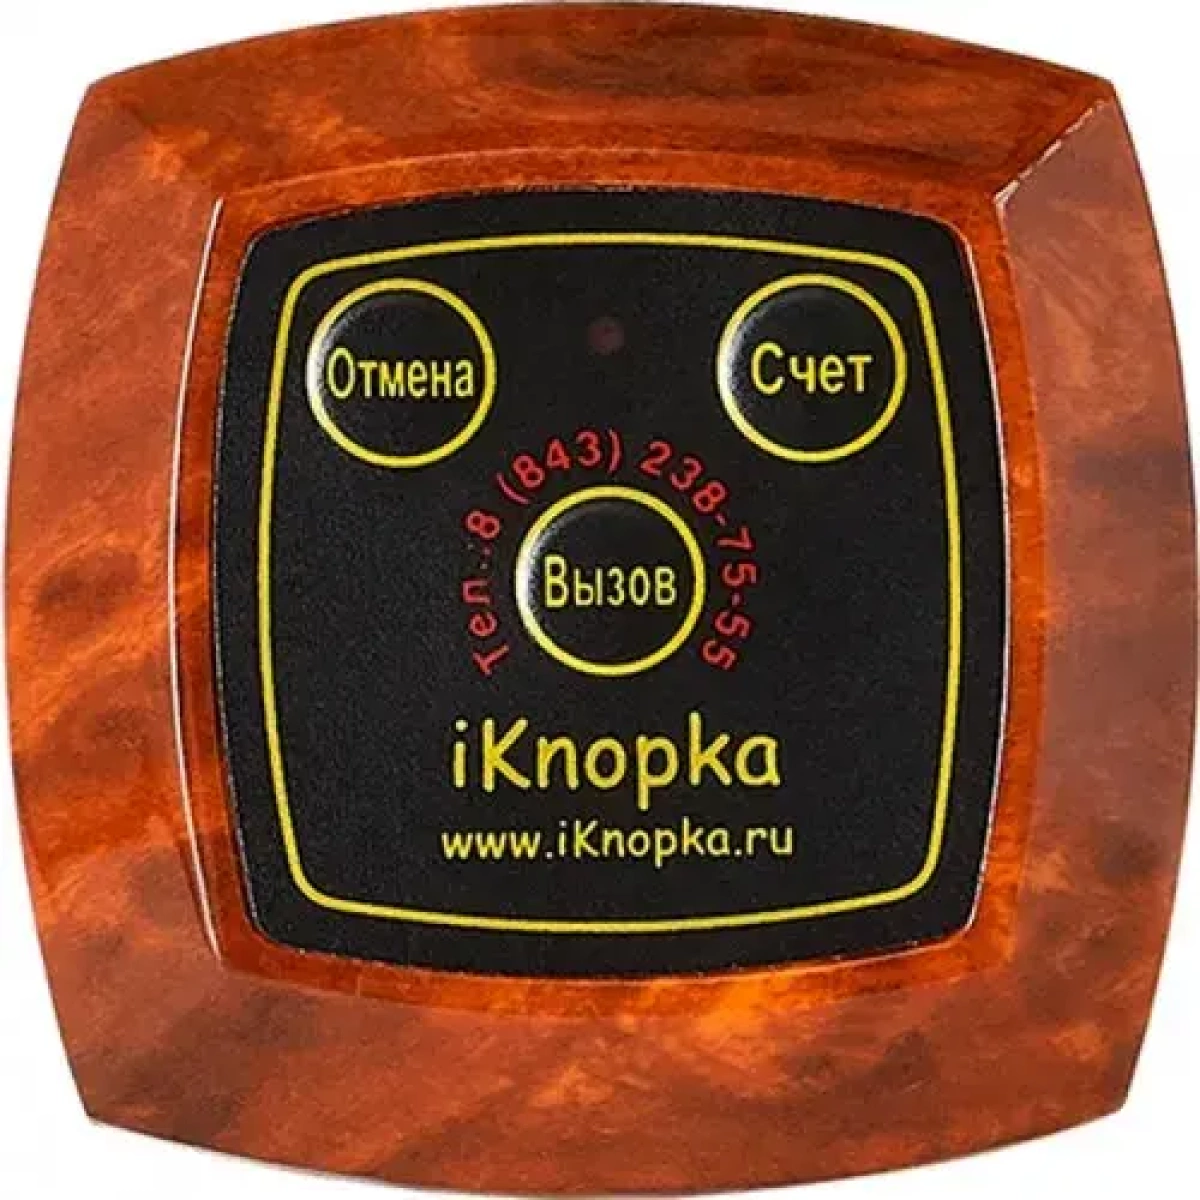 iknopka-are630